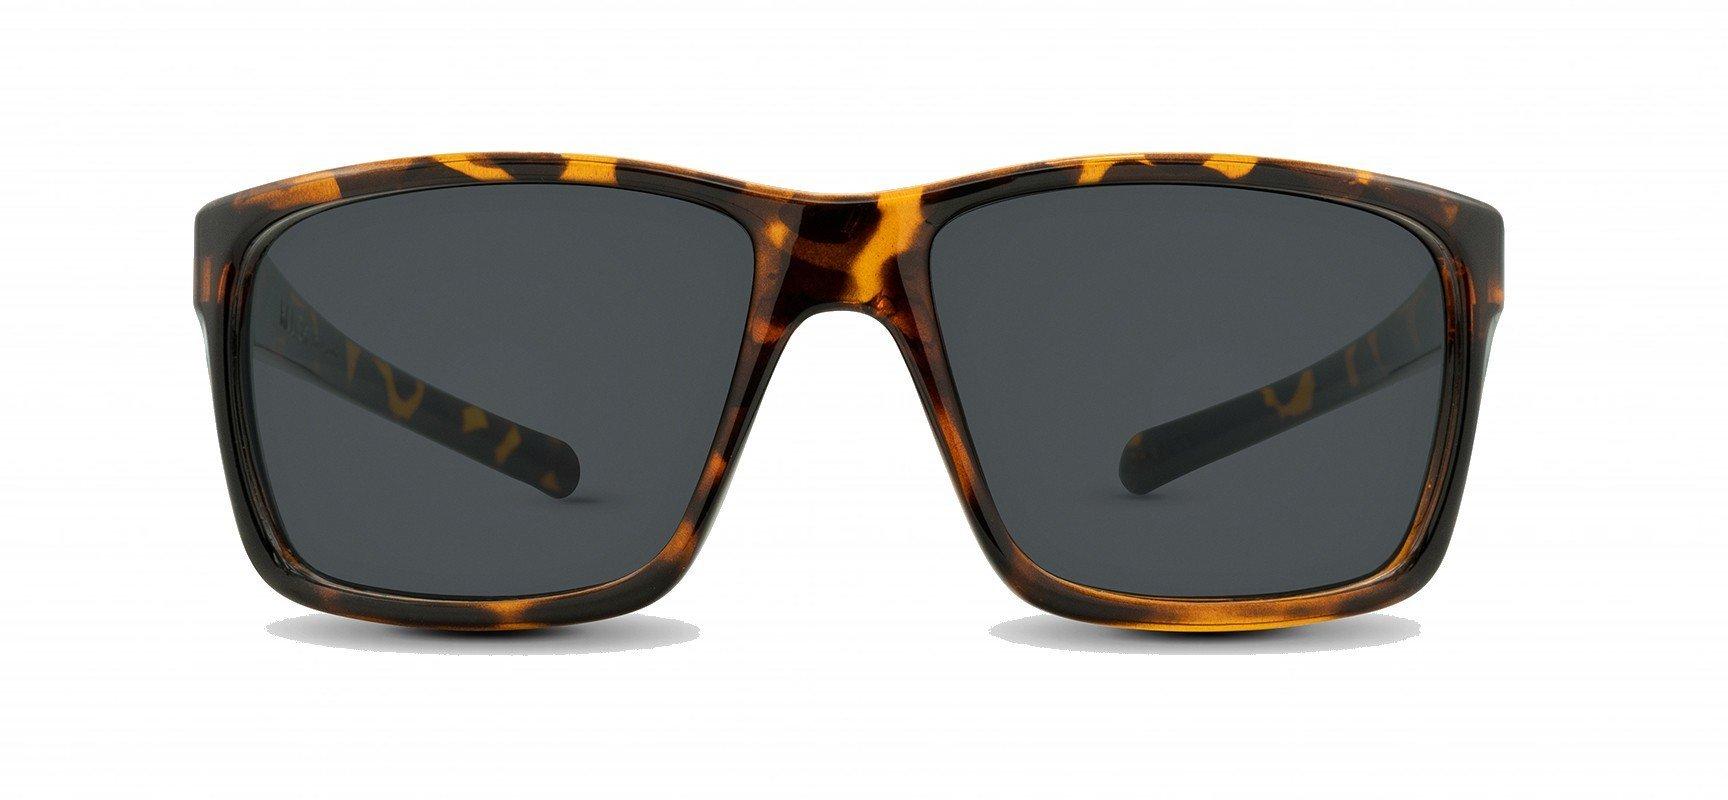 Killick Chesapeake Sonnenbrille Herren Braun 47mm von Nectar